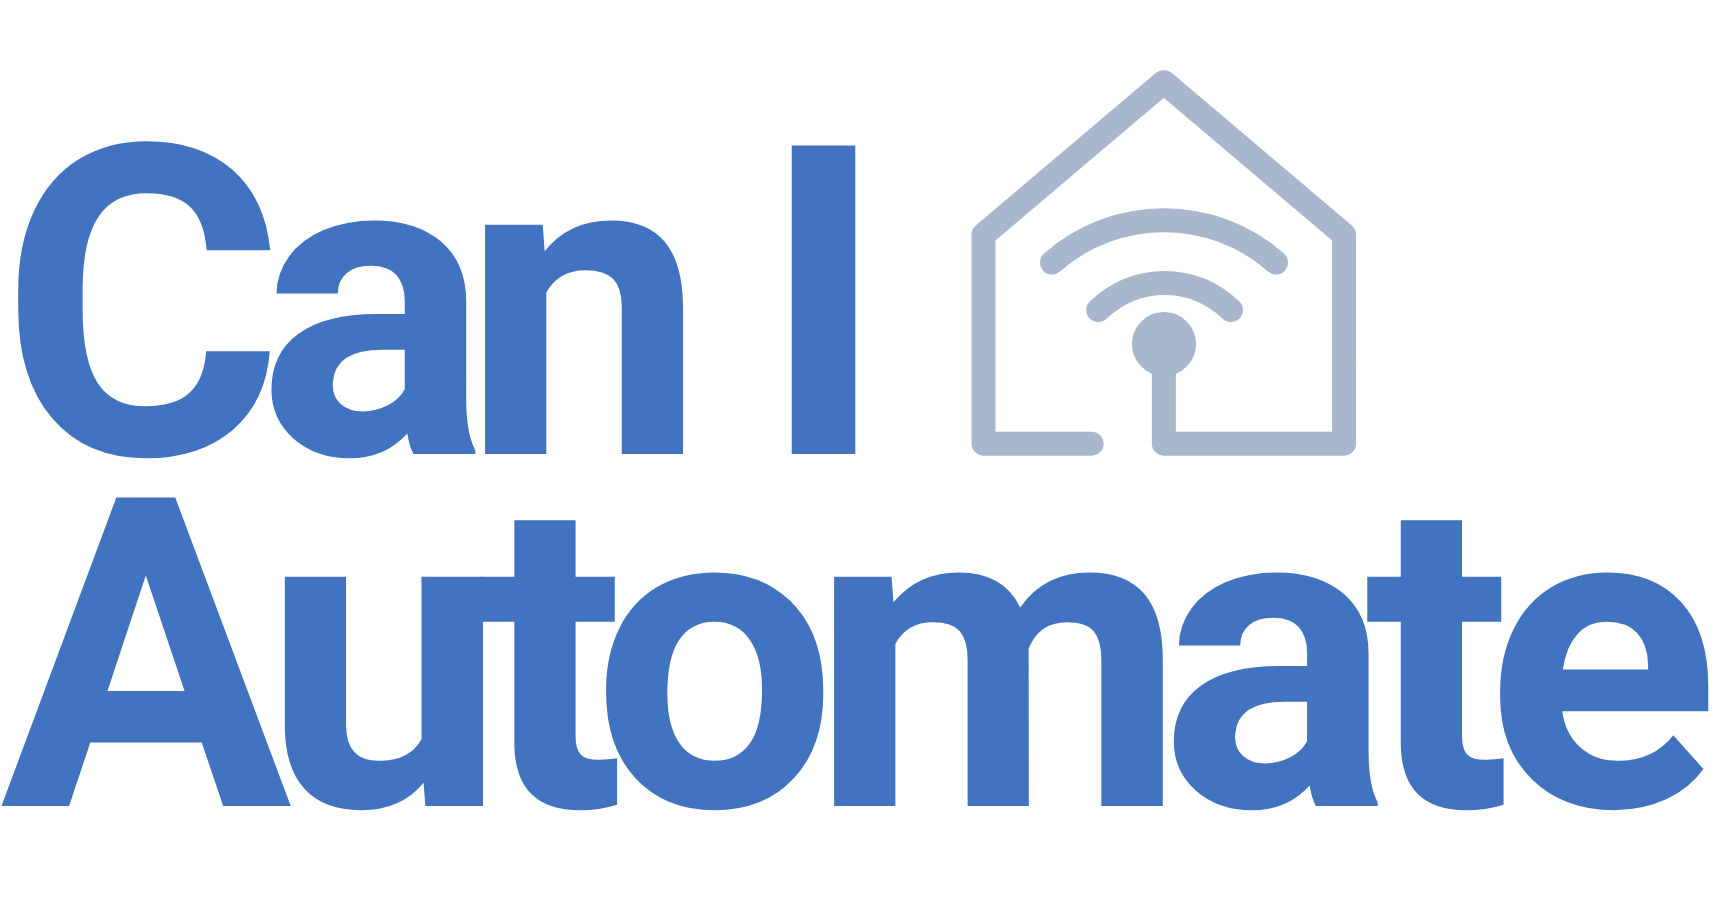 Can I Automate Logo